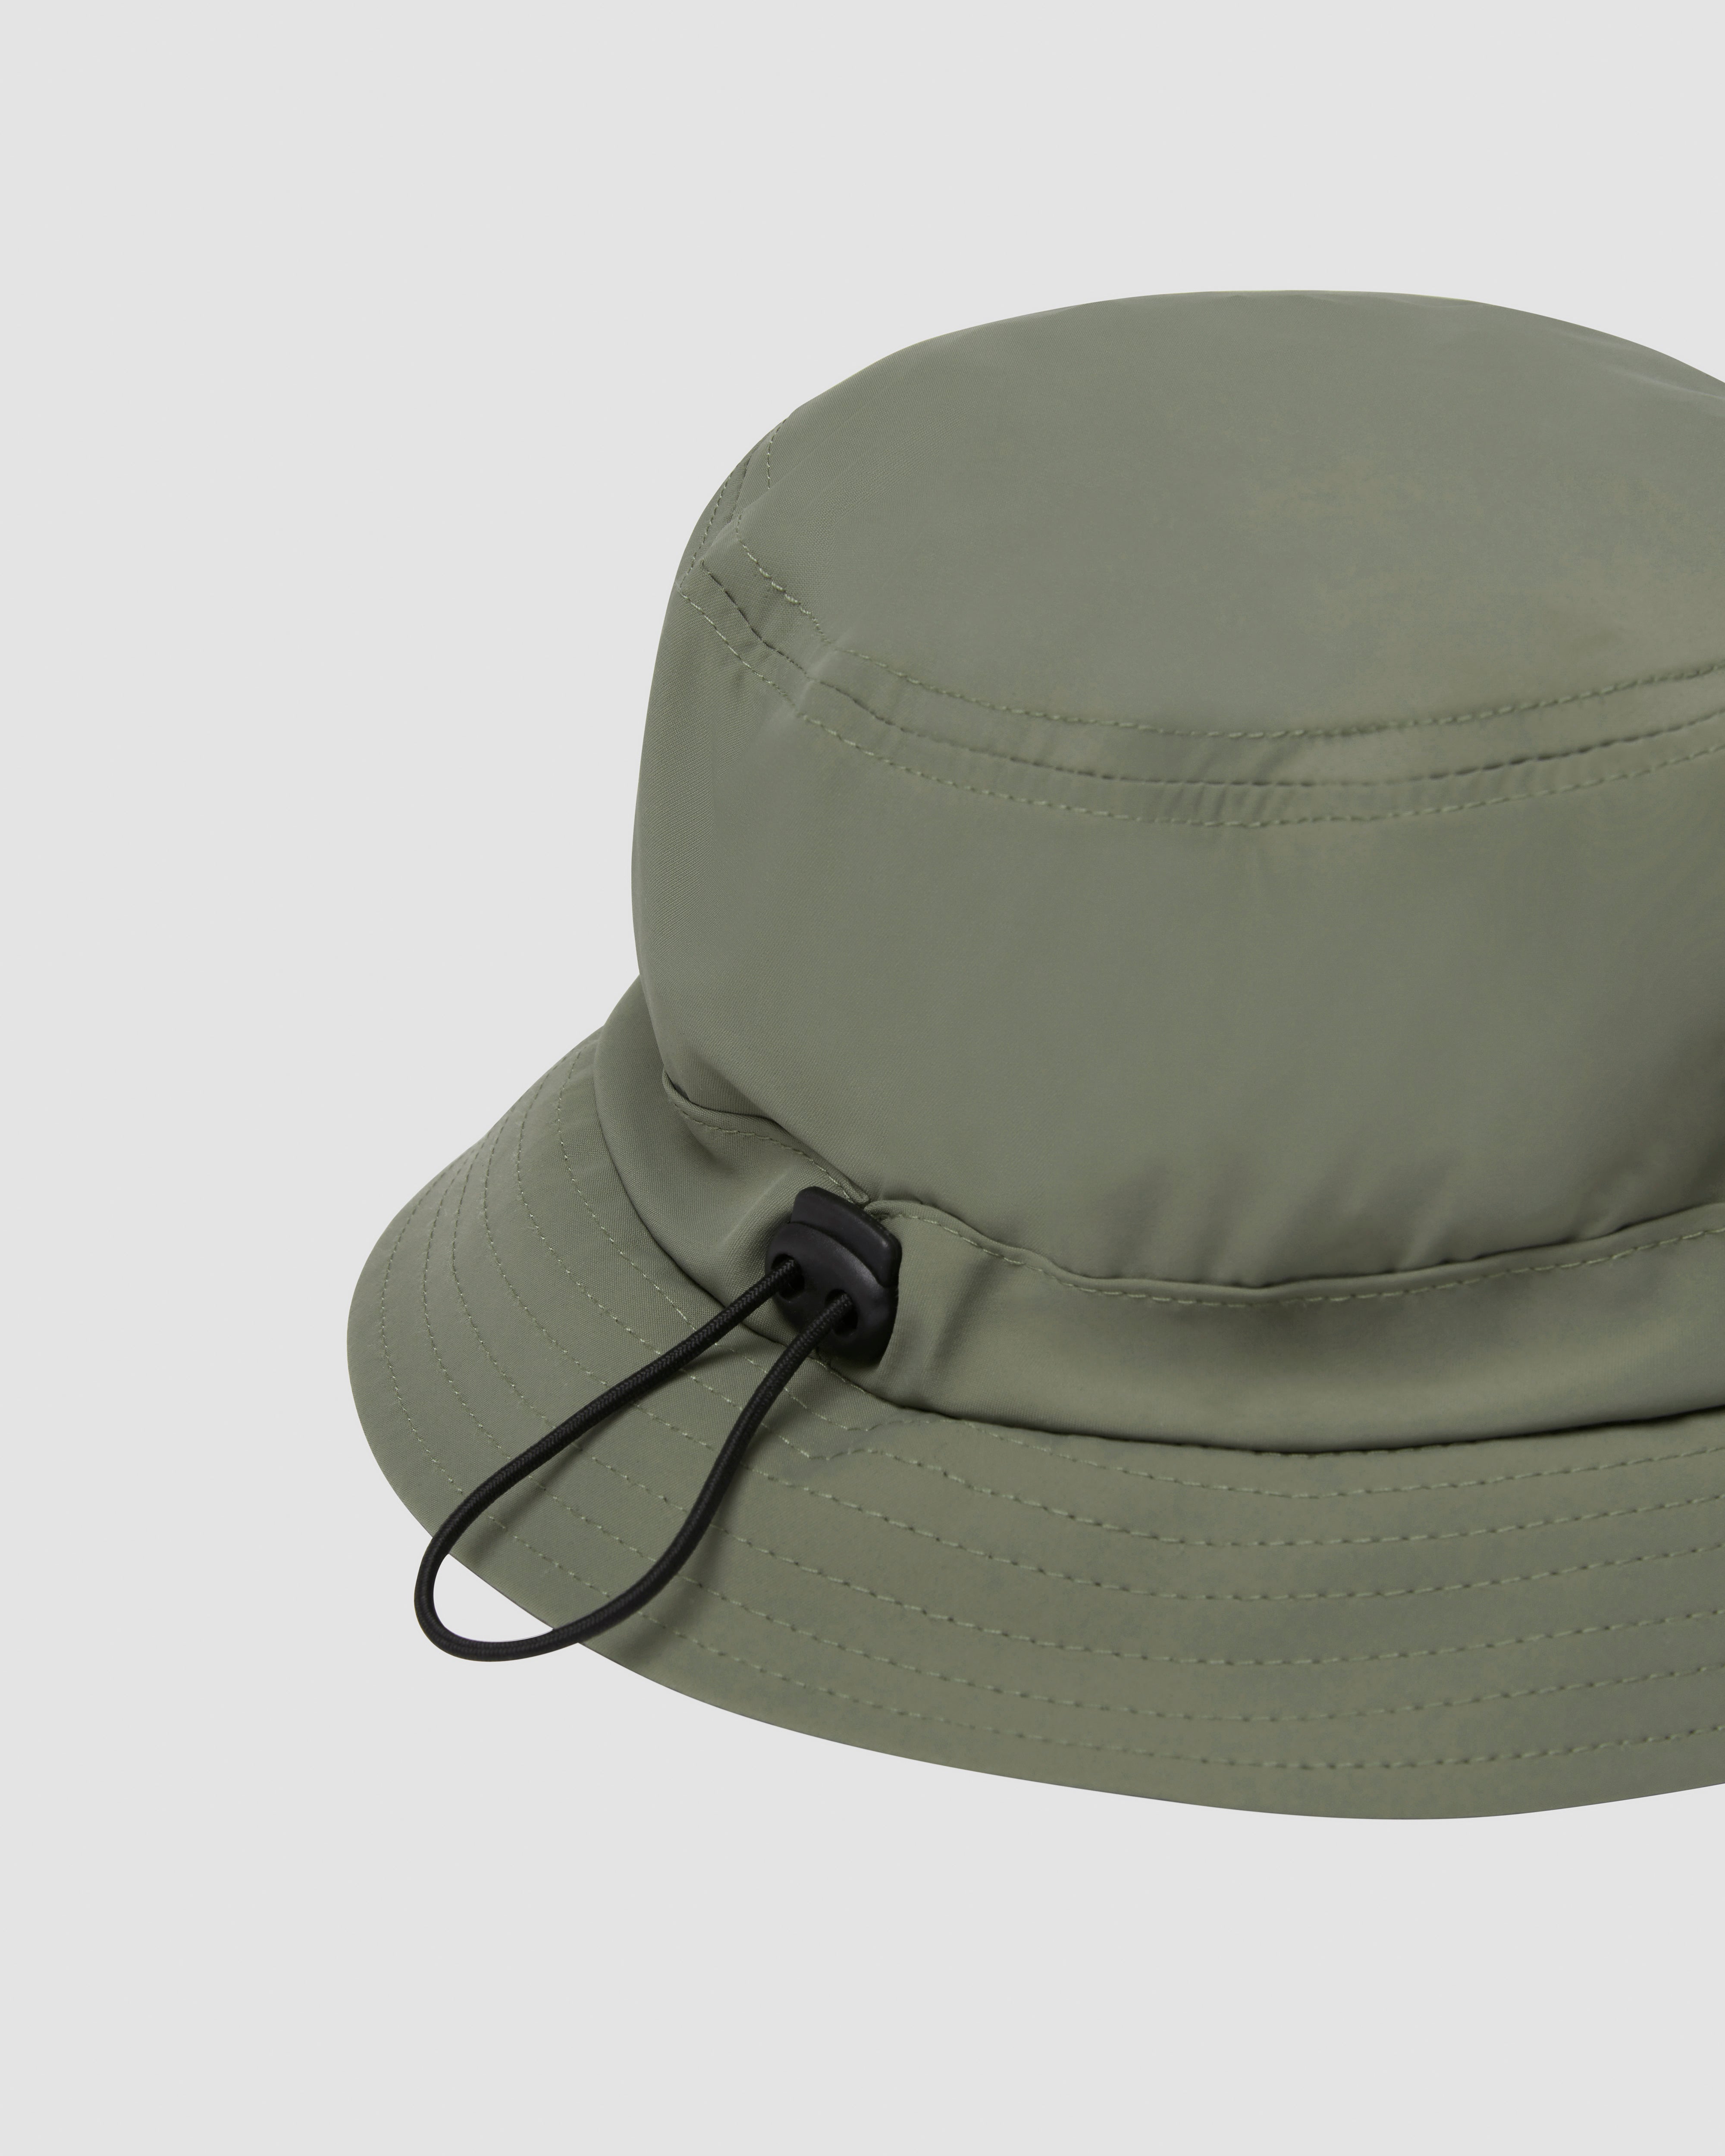 Ranger Bucket Hat